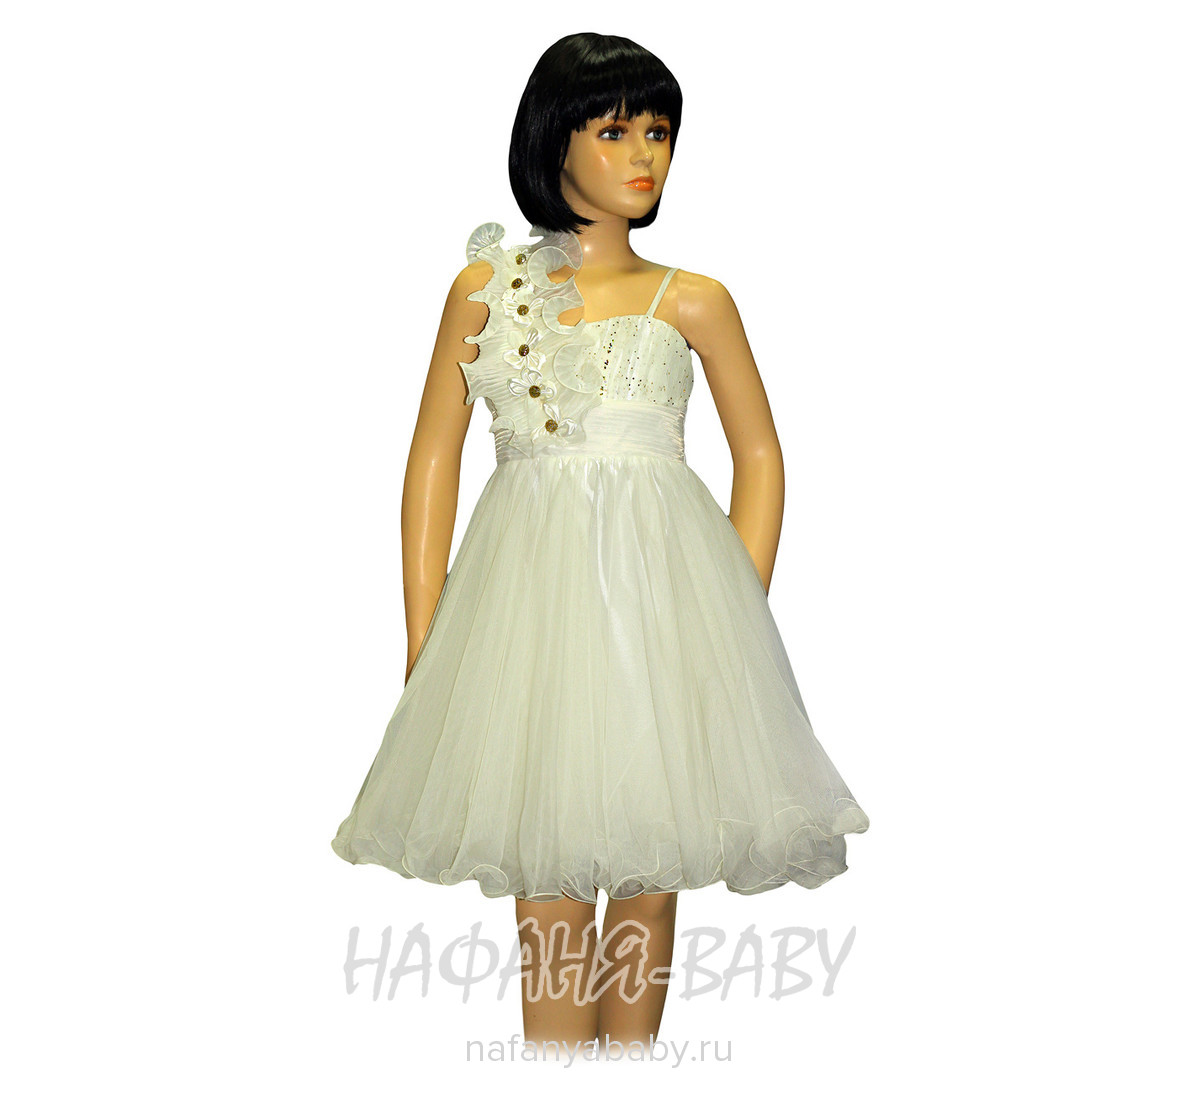 Нарядное подростковое  платье ALTIN Kids, купить в интернет магазине Нафаня. арт: 8130.